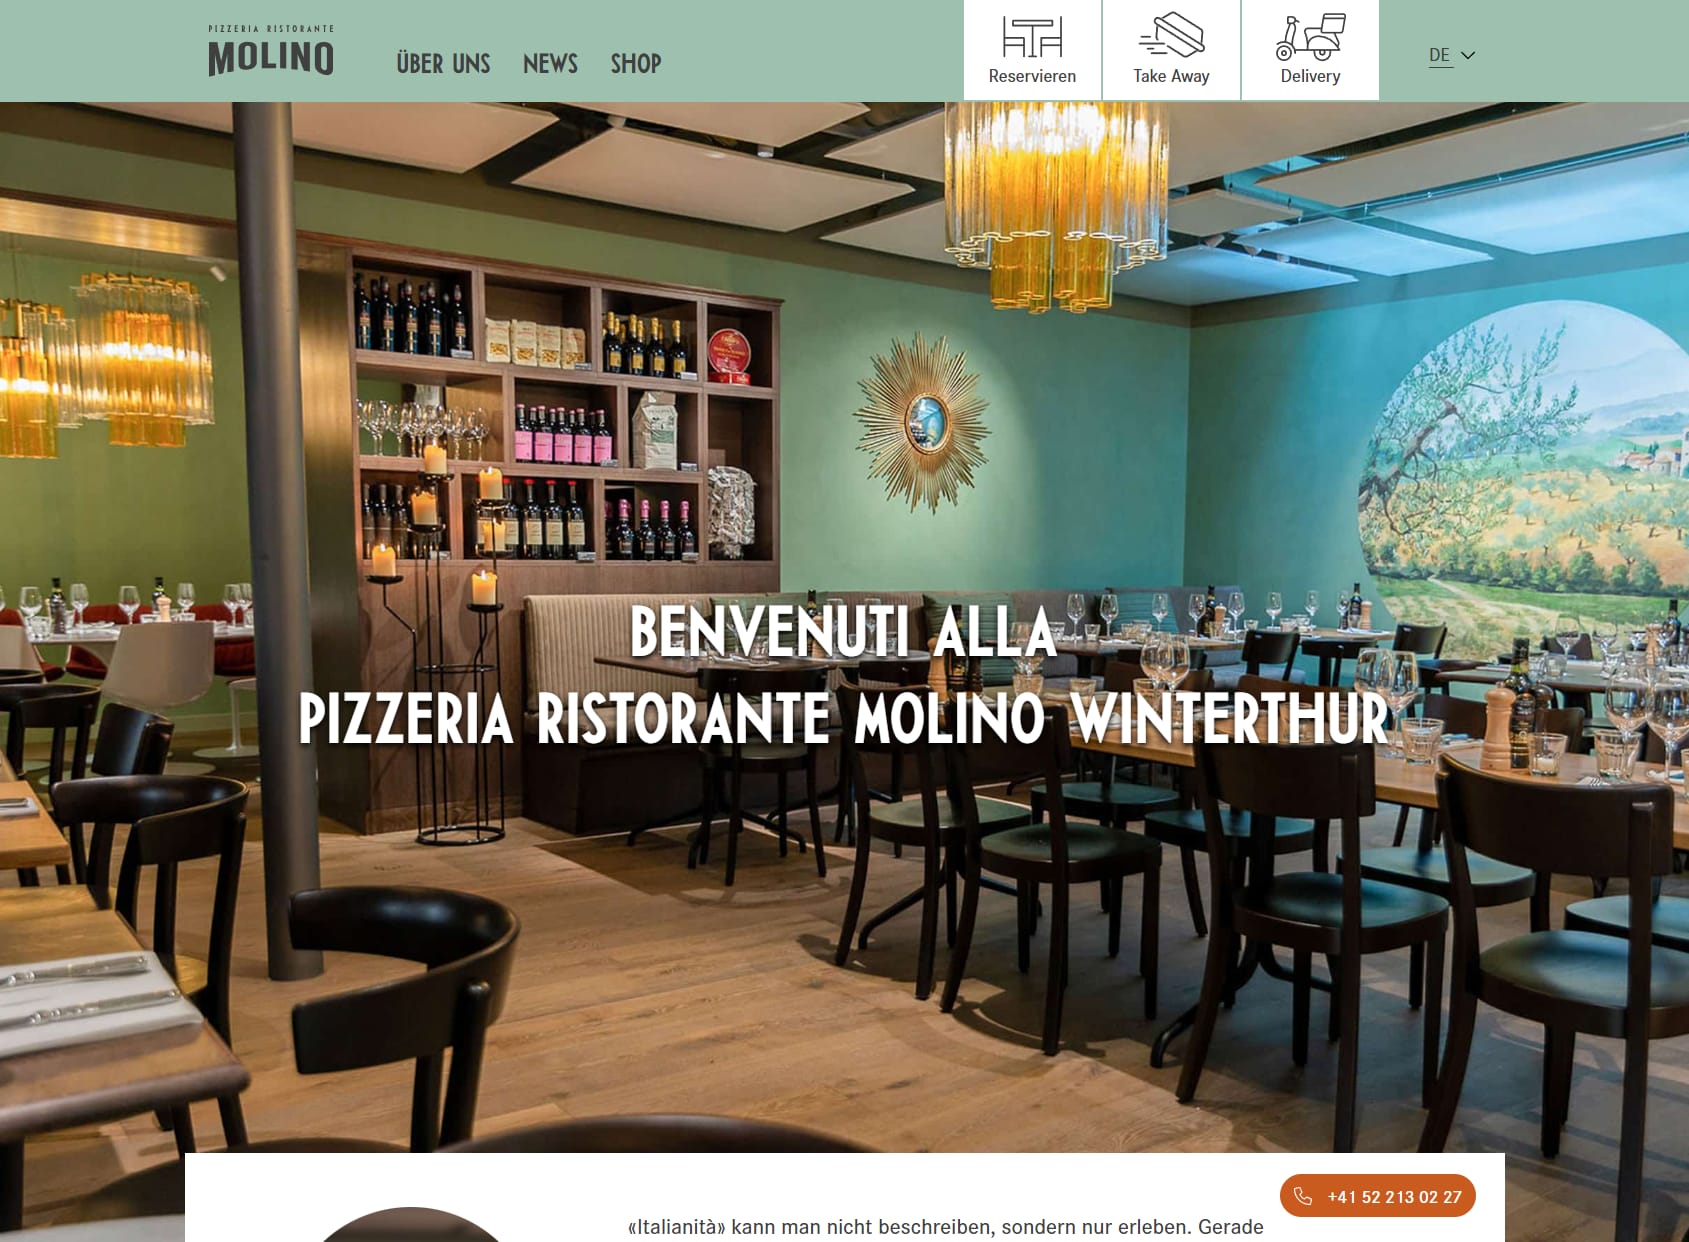 Pizzeria Ristorante Molino Winterthur